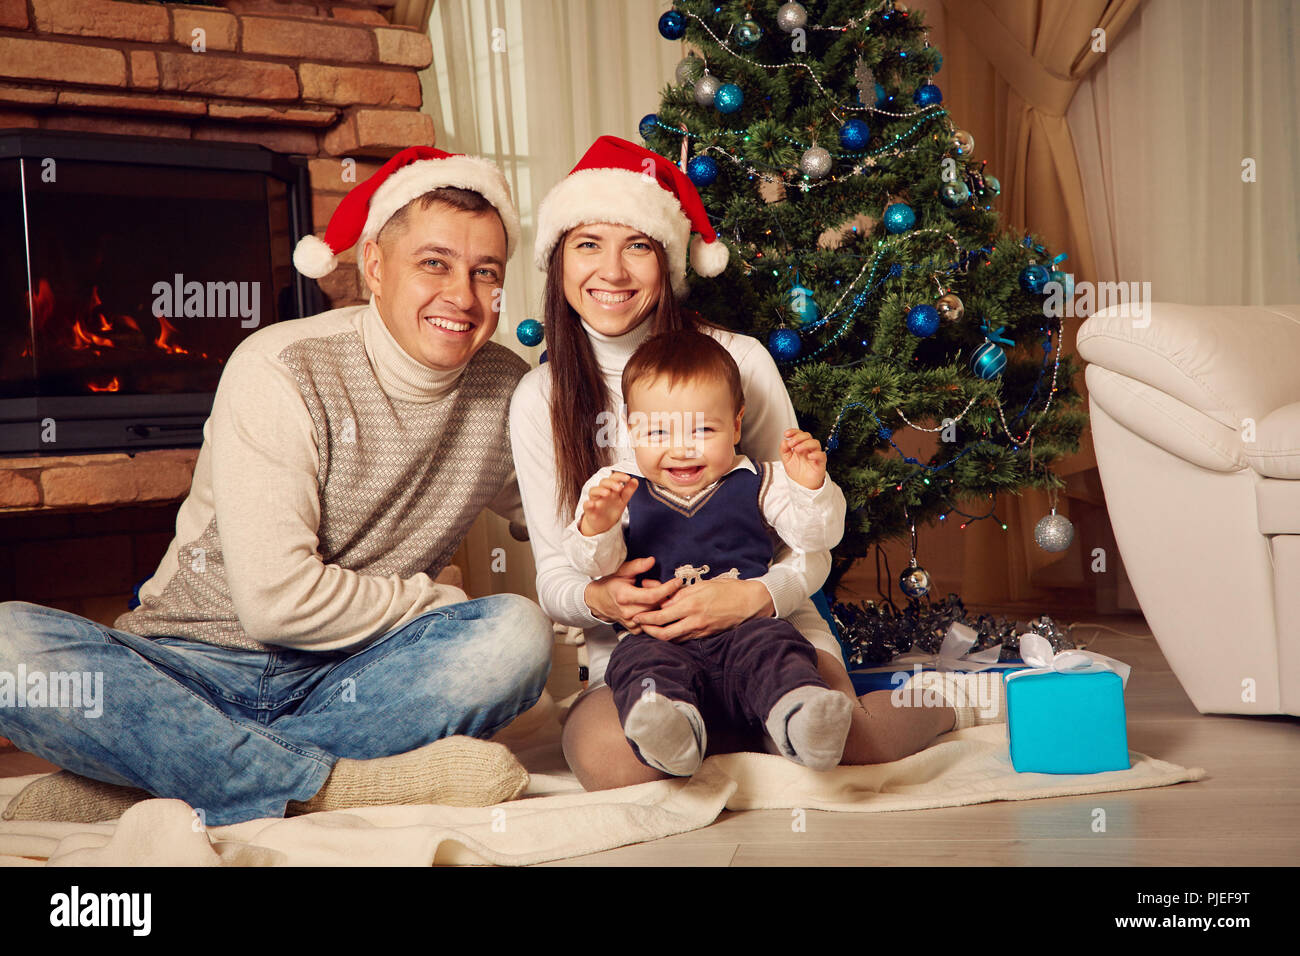 La celebración de la Navidad de la familia sobre los antecedentes del árbol de Navidad Foto de stock